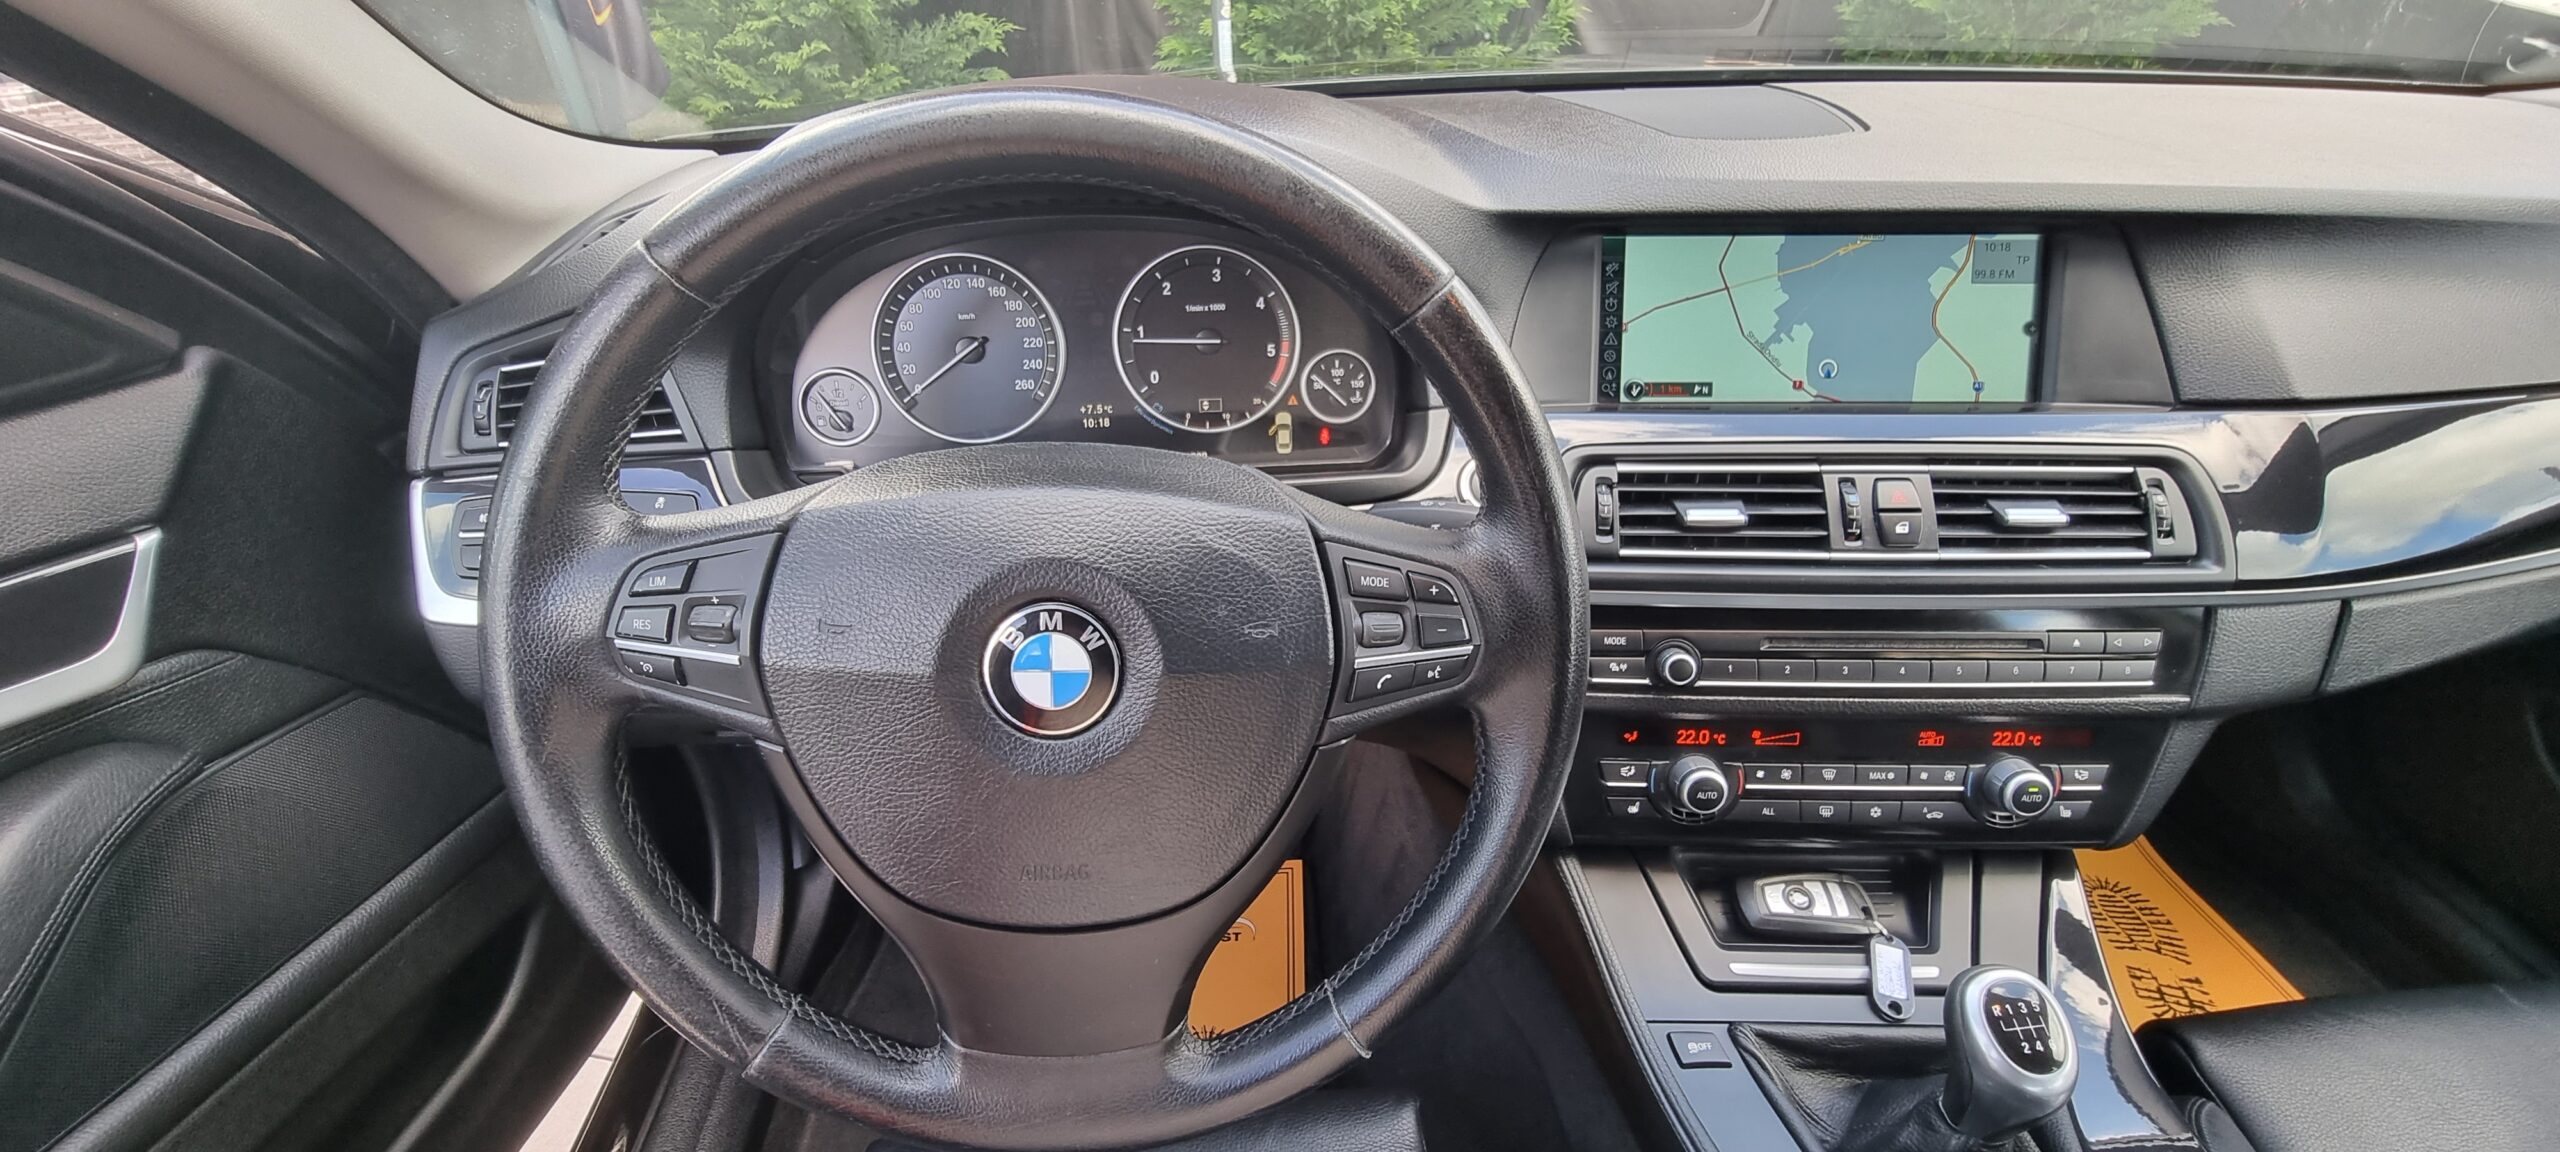 BMW SERIA 5 F 10, 2.0 DIESEL, 184 CP, EURO 5, AN 2011